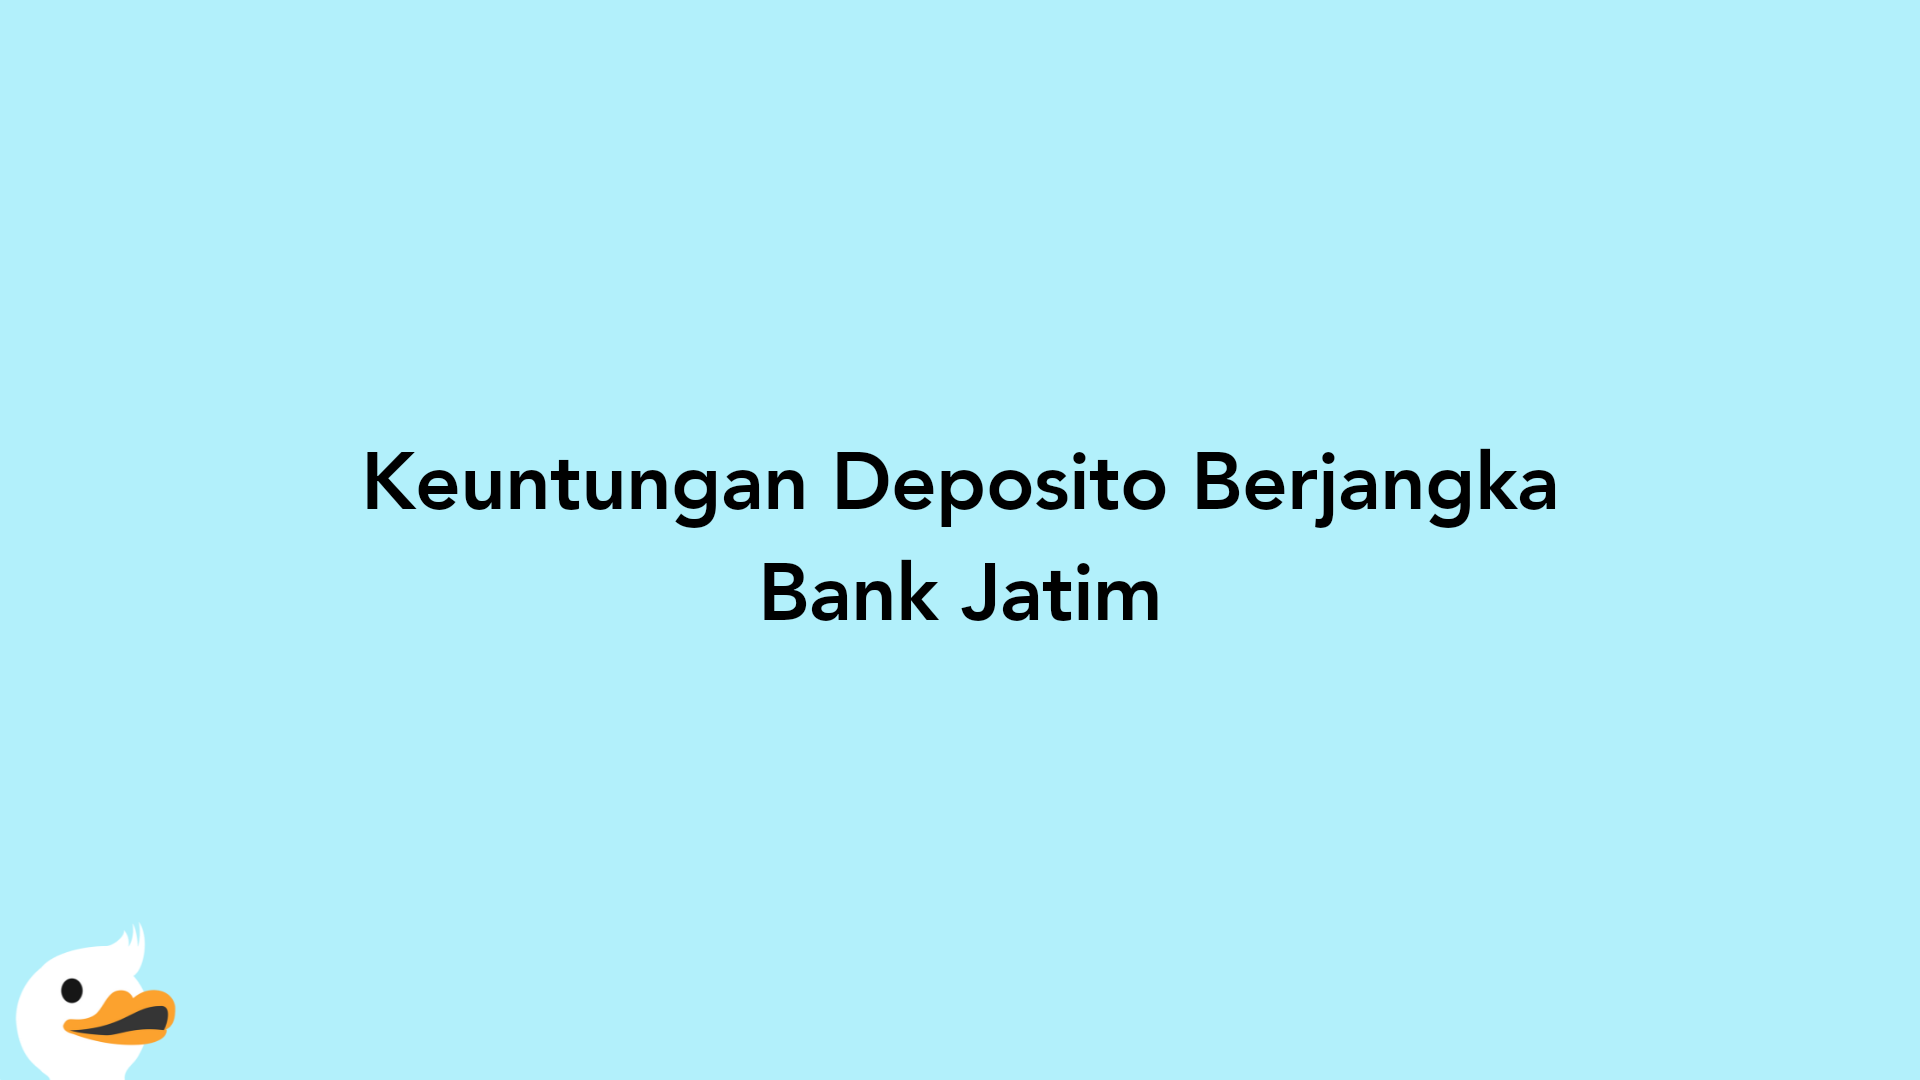 Keuntungan Deposito Berjangka Bank Jatim